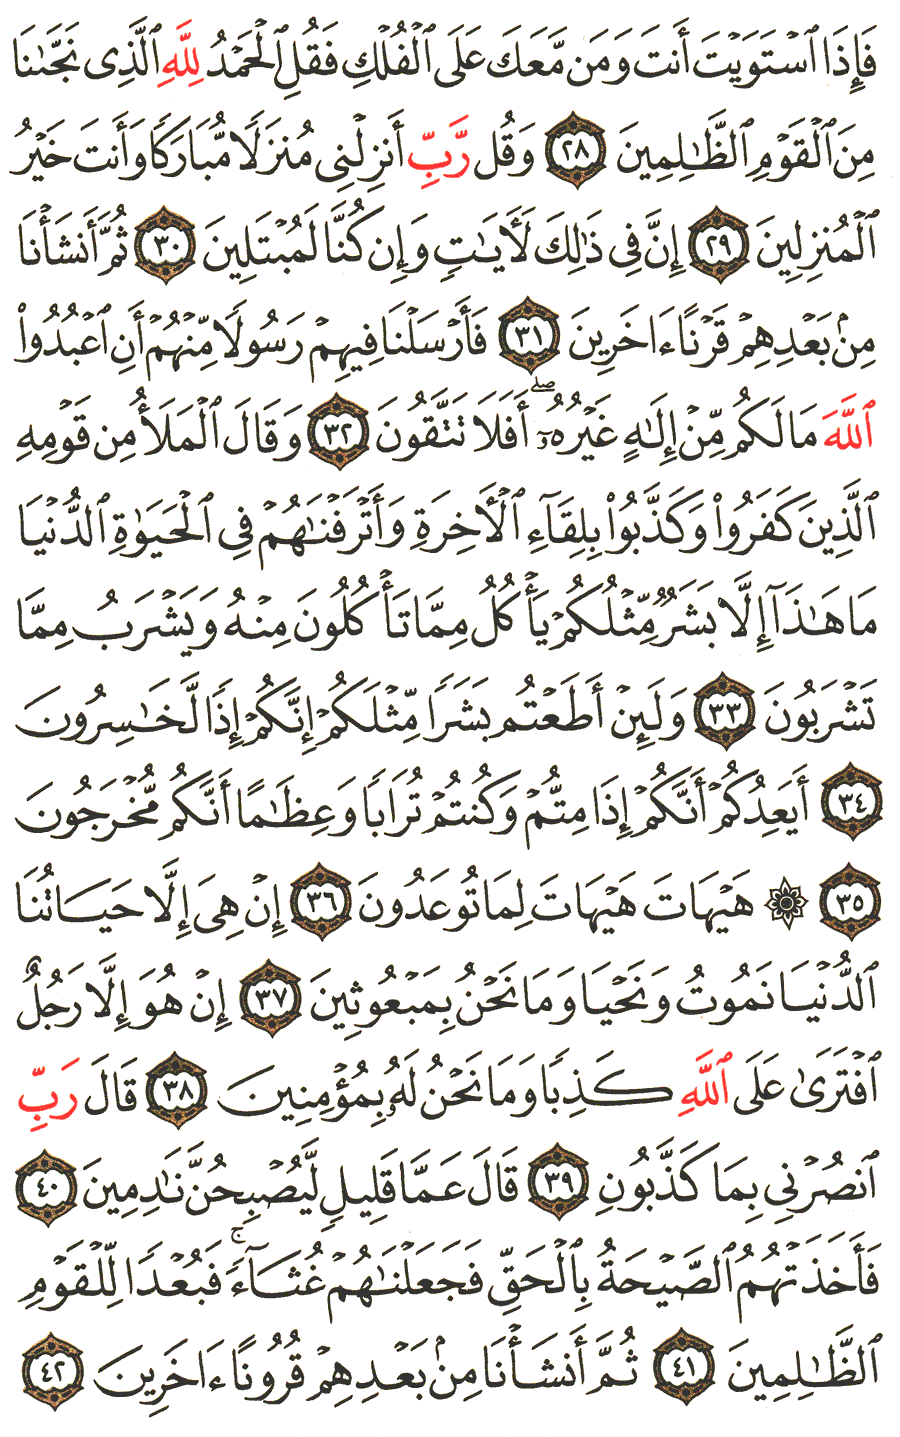 الصفحة 344 من القرآن الكريم